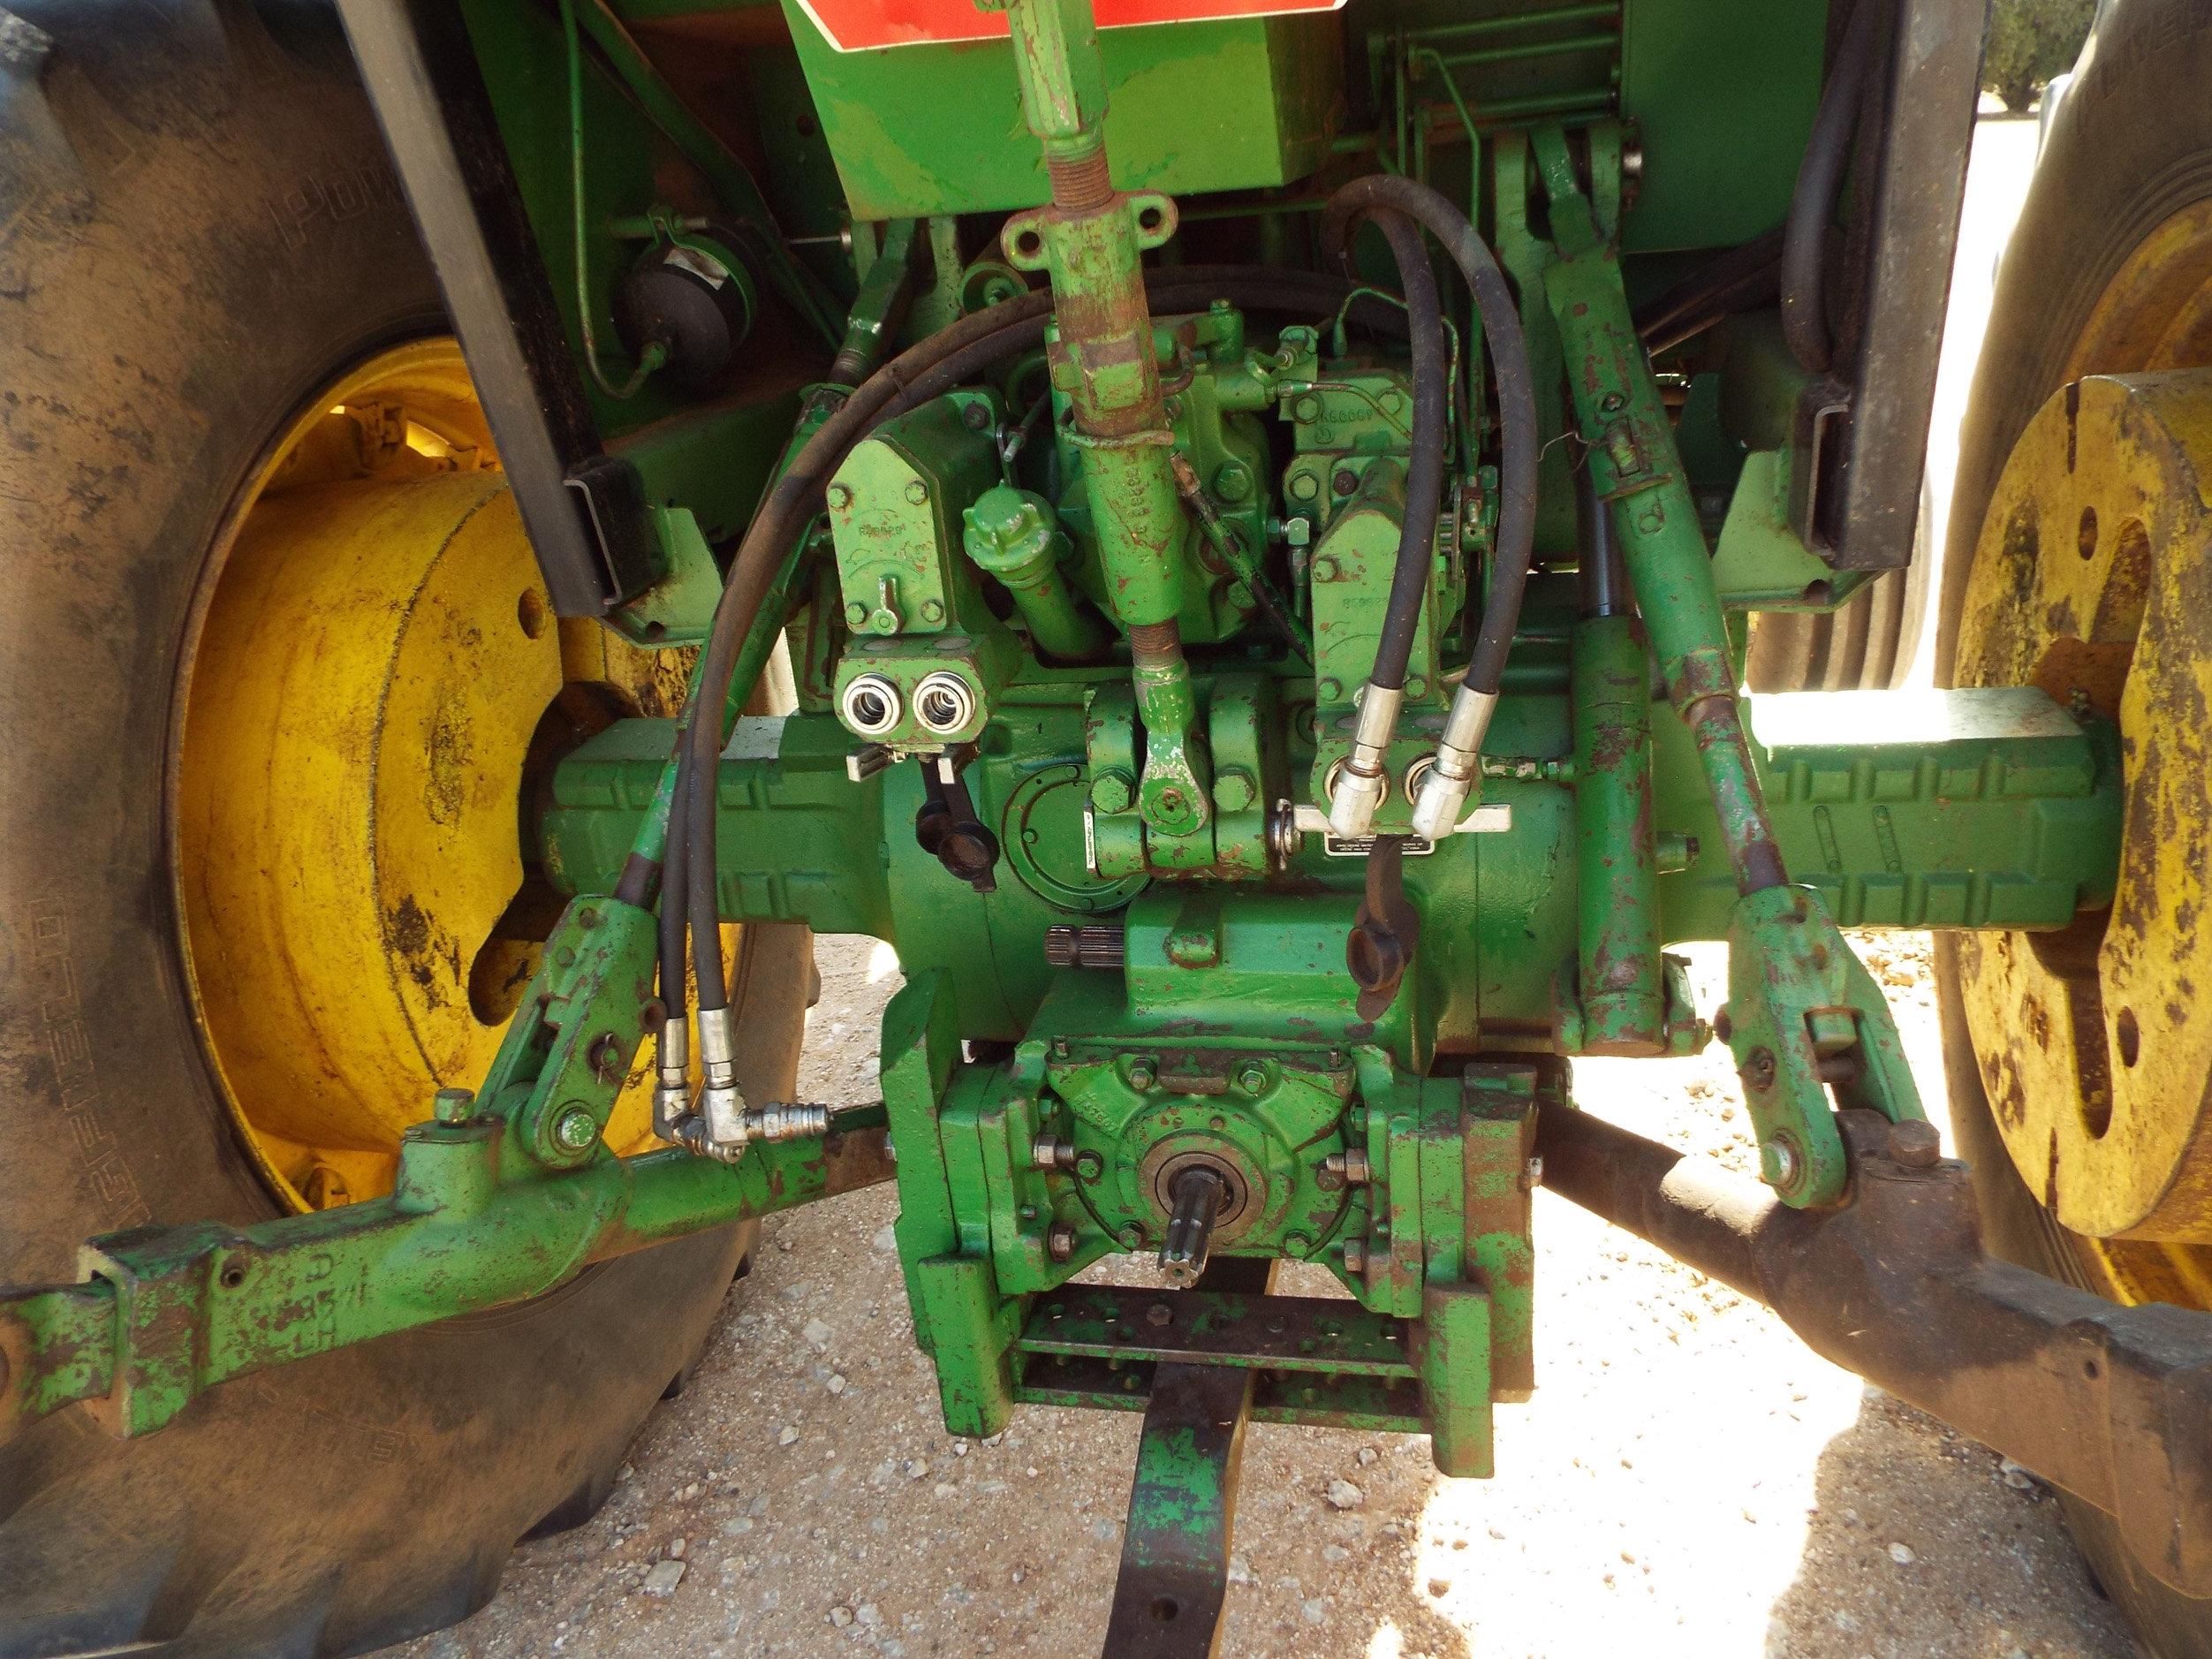 John Deere 4440 2W tractor, 9,426 hrs